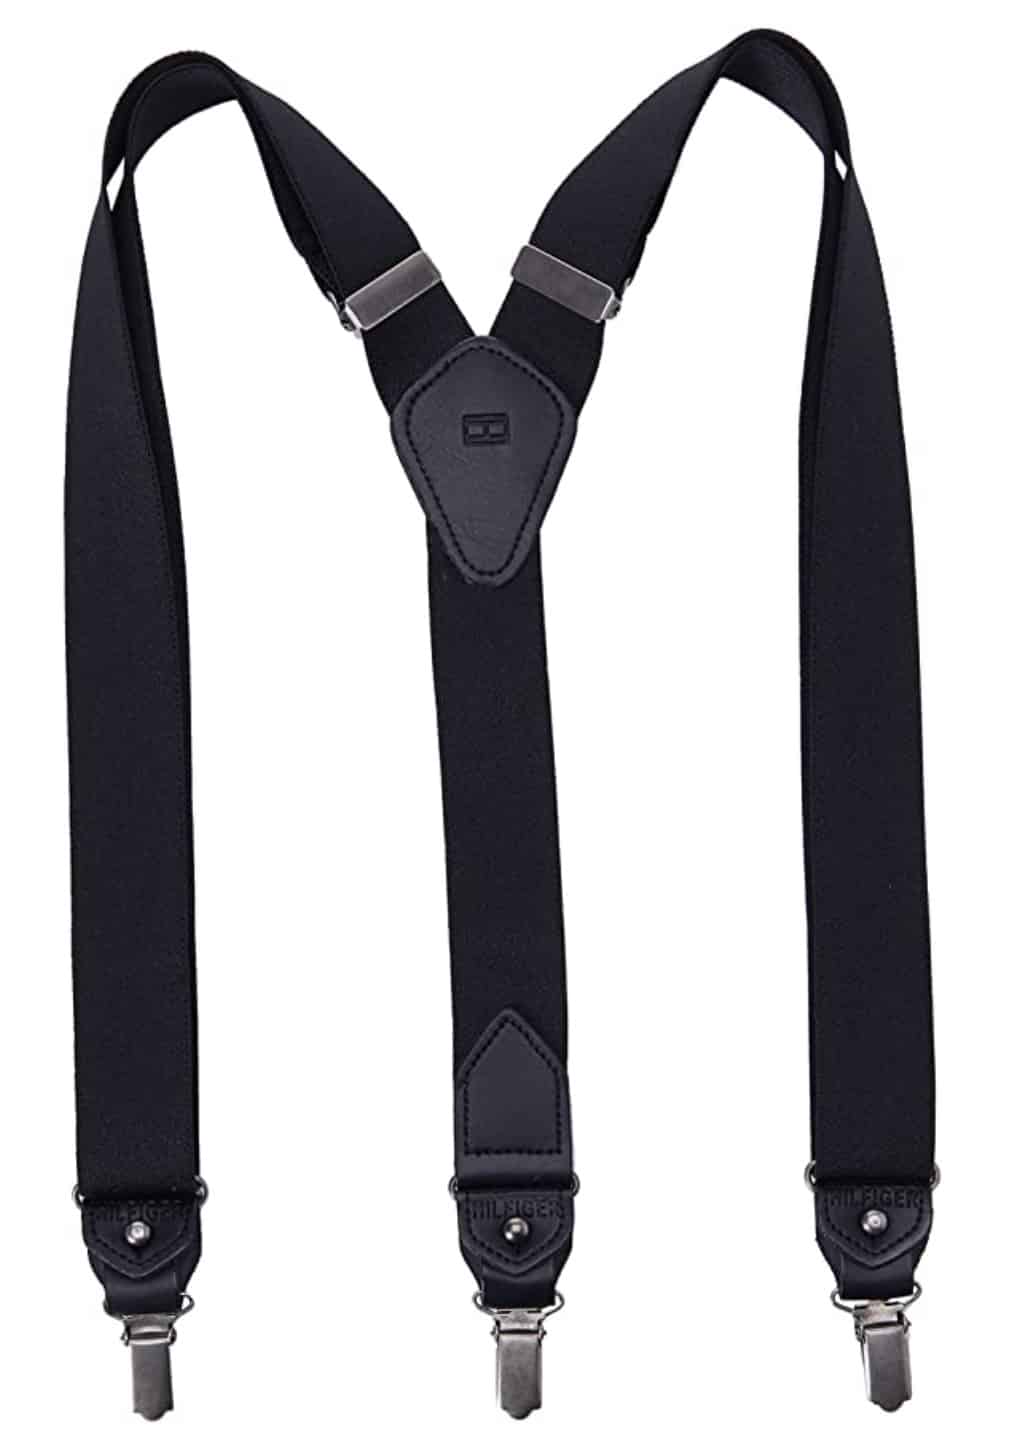 Tommy Hilfiger Best Suspenders for Men 